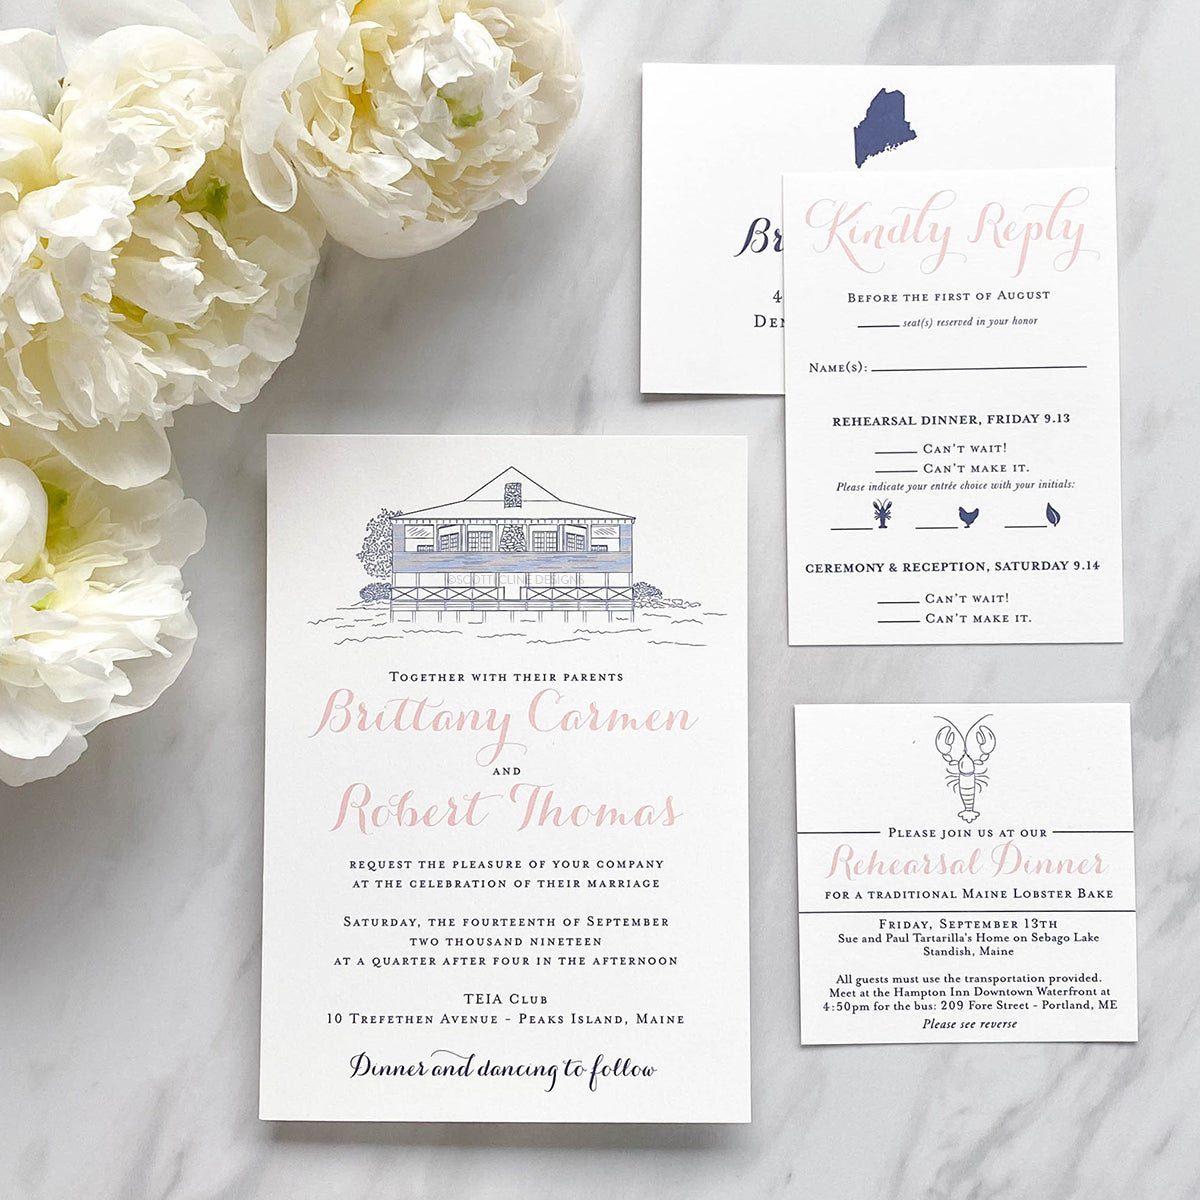 TEIA Club Wedding Invitation by Scotti Cline Designs